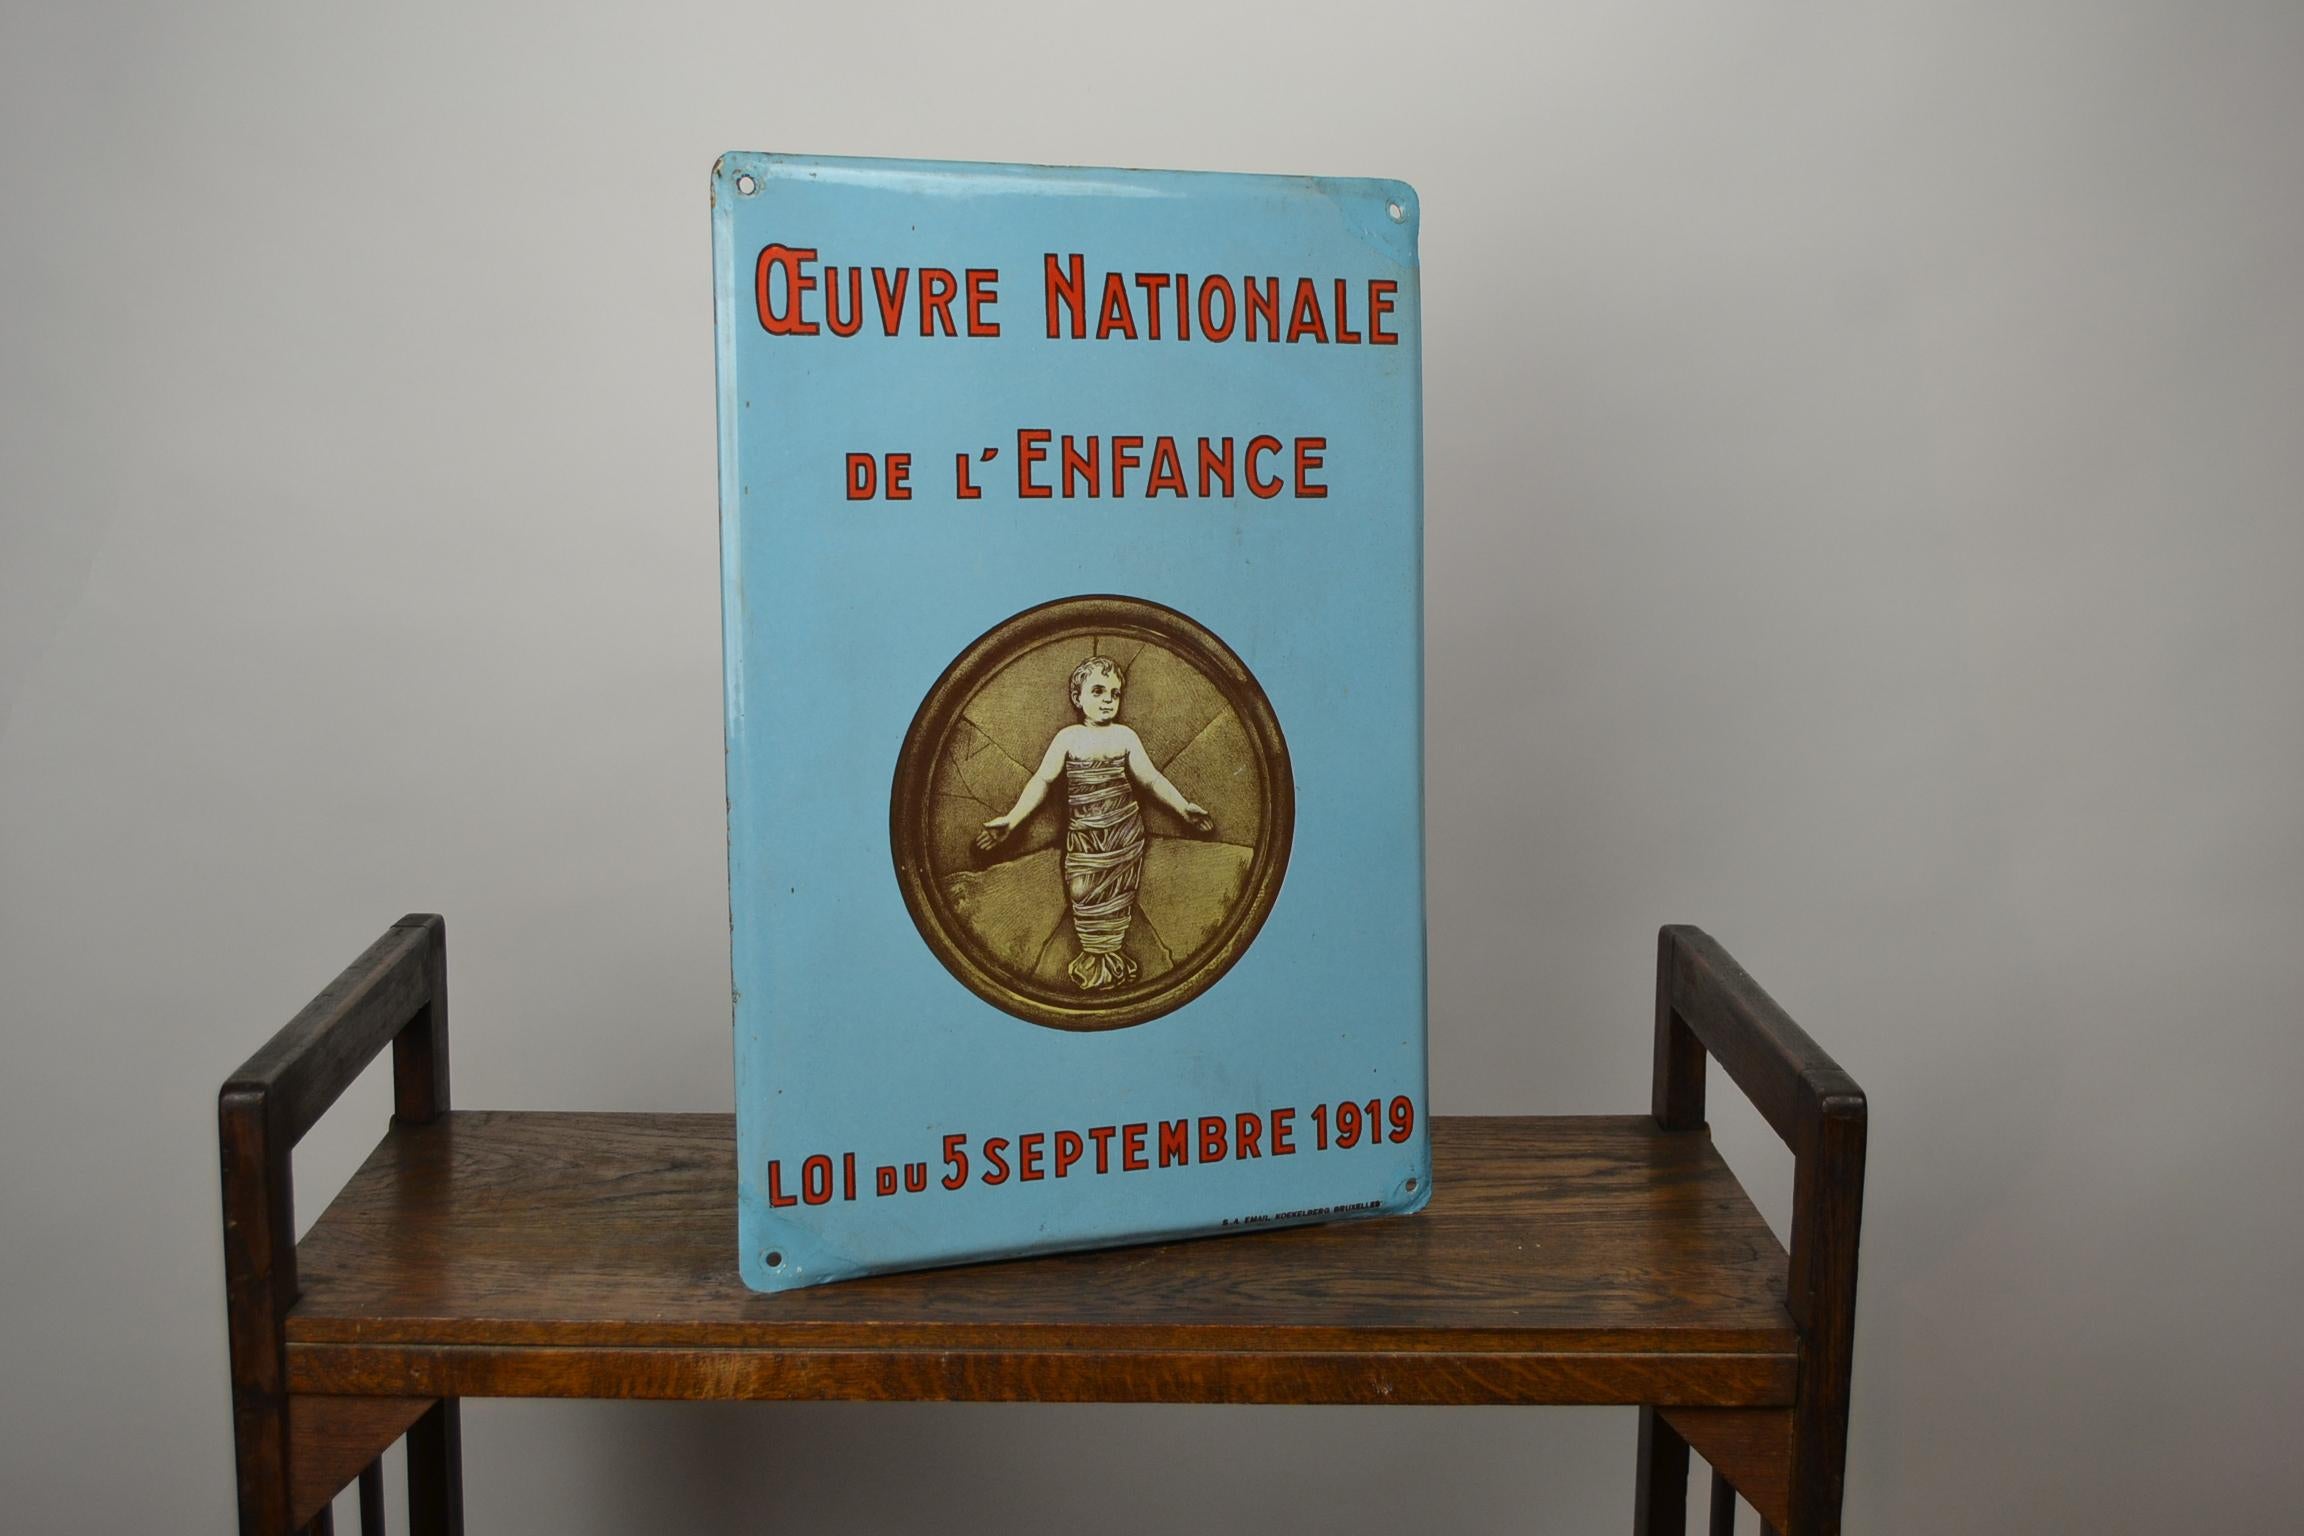 Vintage Enamel Advertising Sign, Oeuvre Nationale de L' Enfance 5